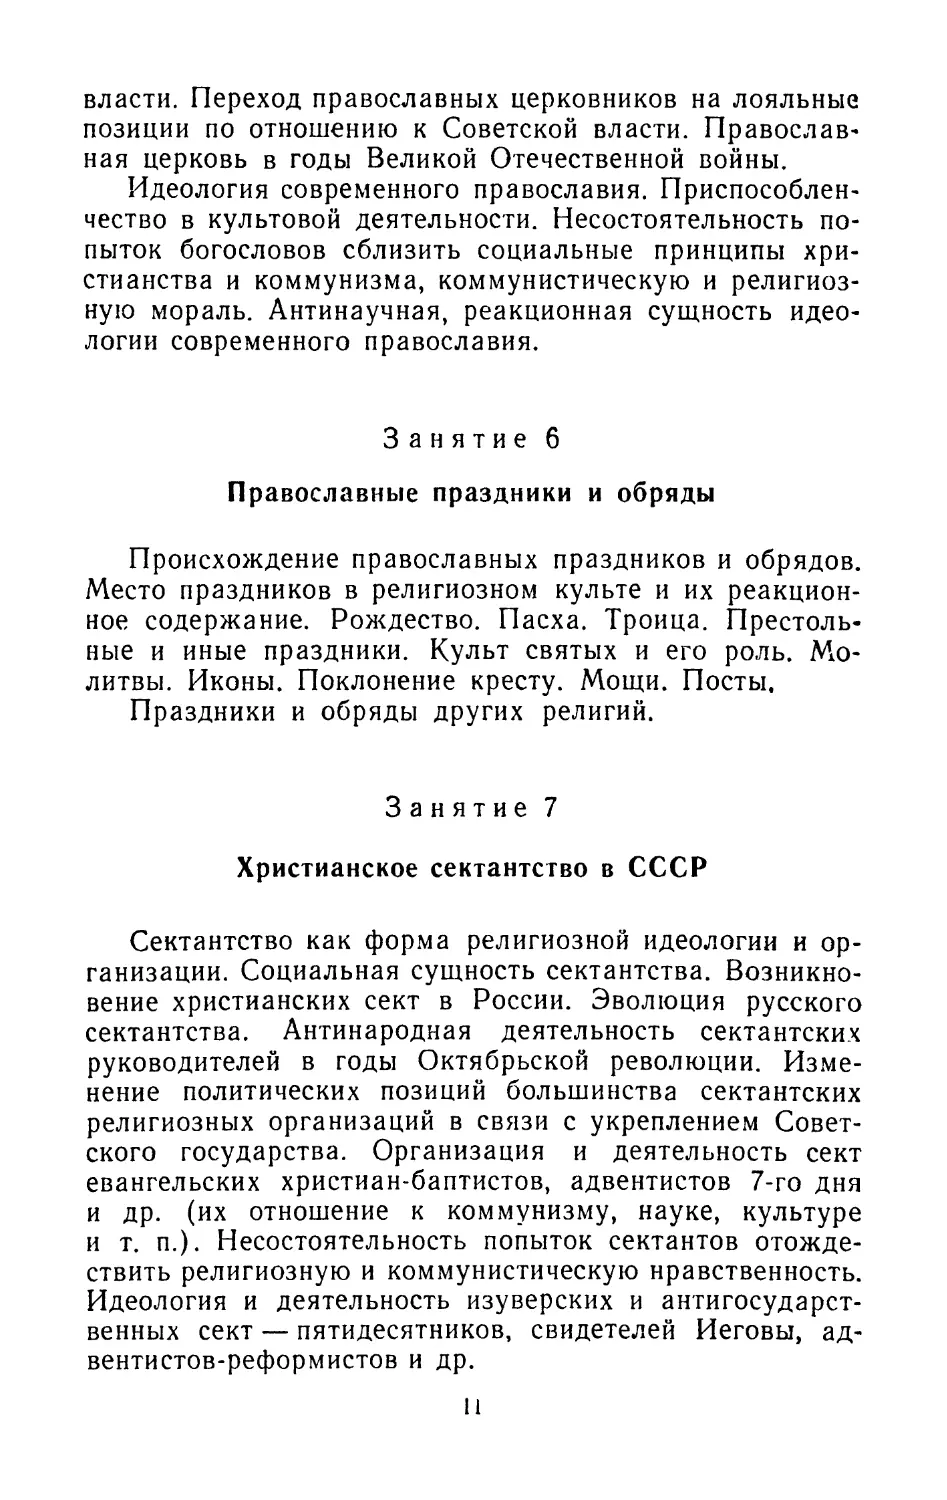 Занятие 6. Православные праздники и обряды
Занятие 7. Христианское сектантство в СССР